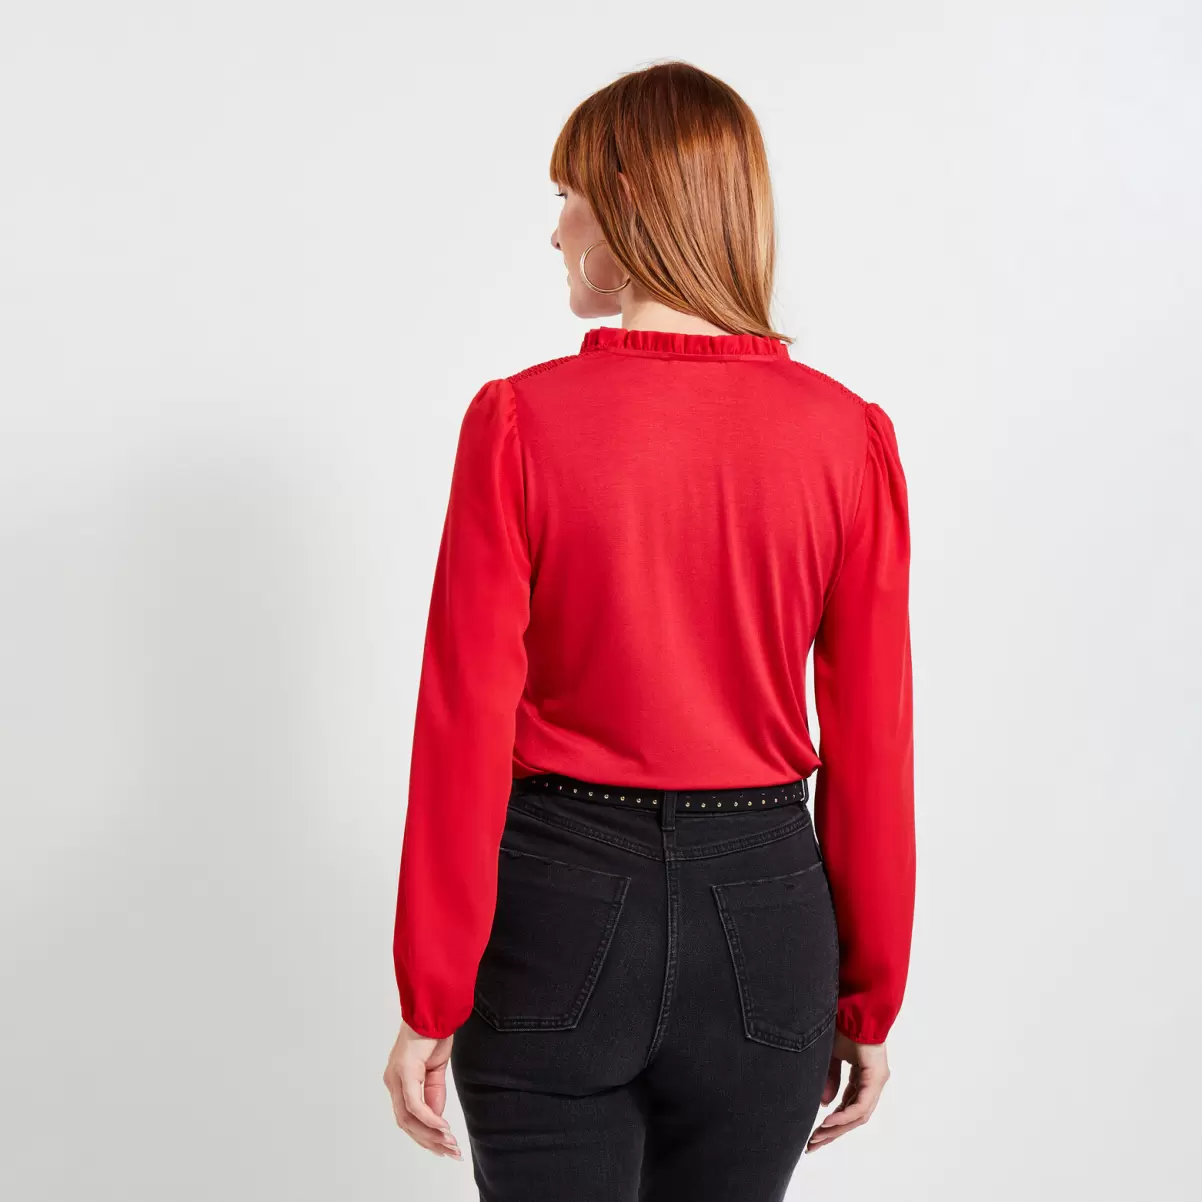 Rouge Femme T-Shirts & Tops Prix Cassé Grain De Malic Tshirt Manches Longues Femme - 1